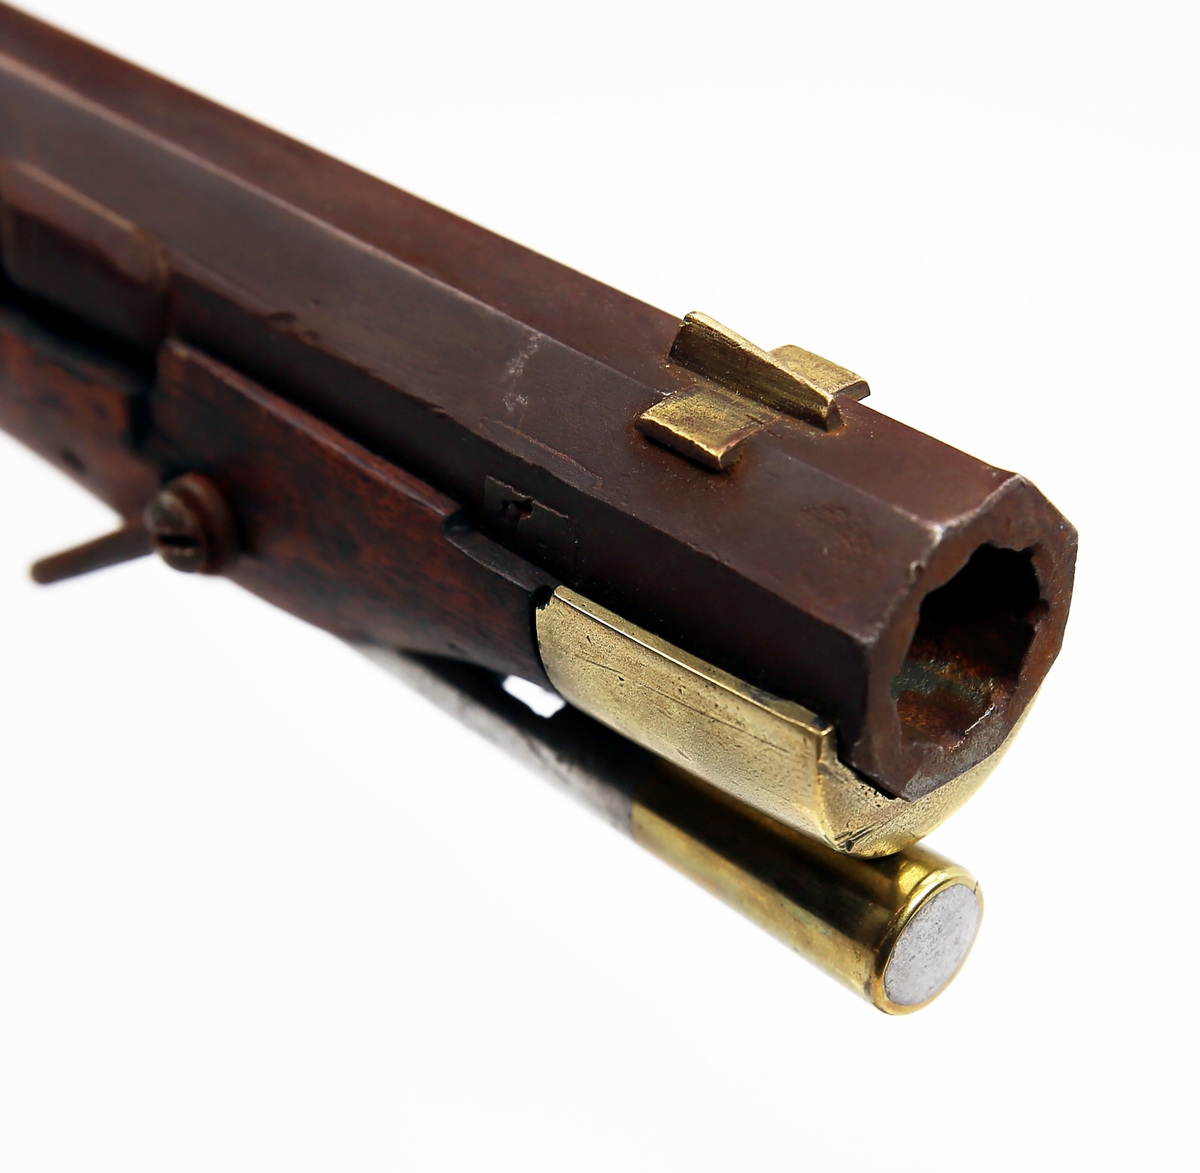 Rifle M/1807/41.
Flintlåsrifle.
Militær ombygd til perkusjonsgevær i 1841 og bajonet feste er fjernet.